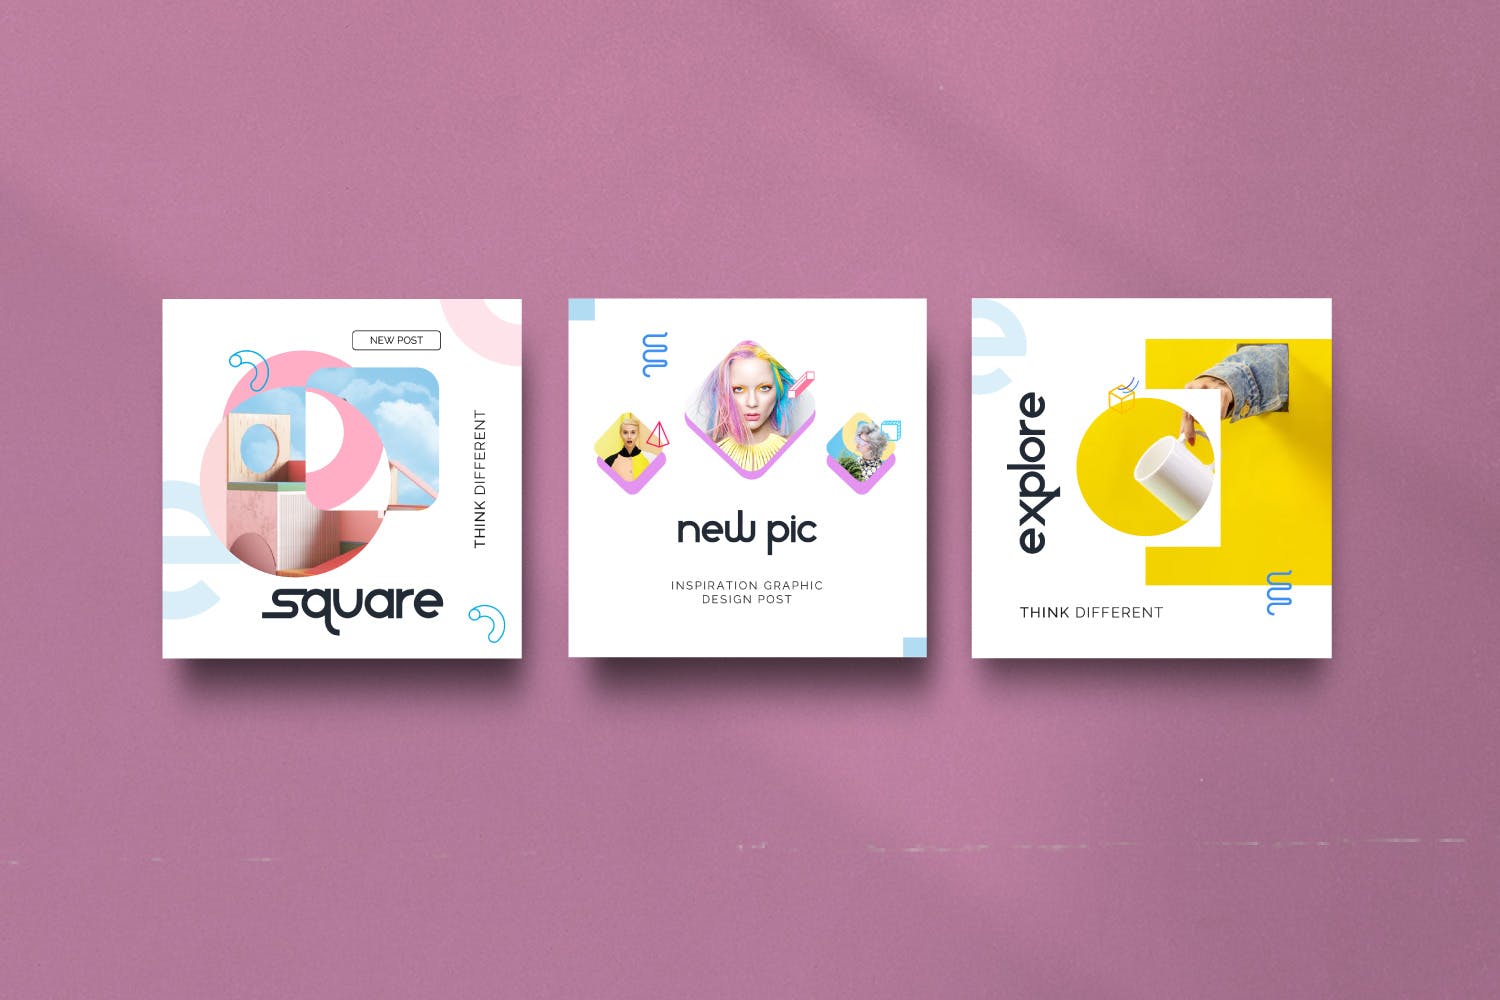 创意几何图形设计风格社交媒体素材包v2 Geometri – Pack 2 Social Media Kit Post+Stories插图(2)